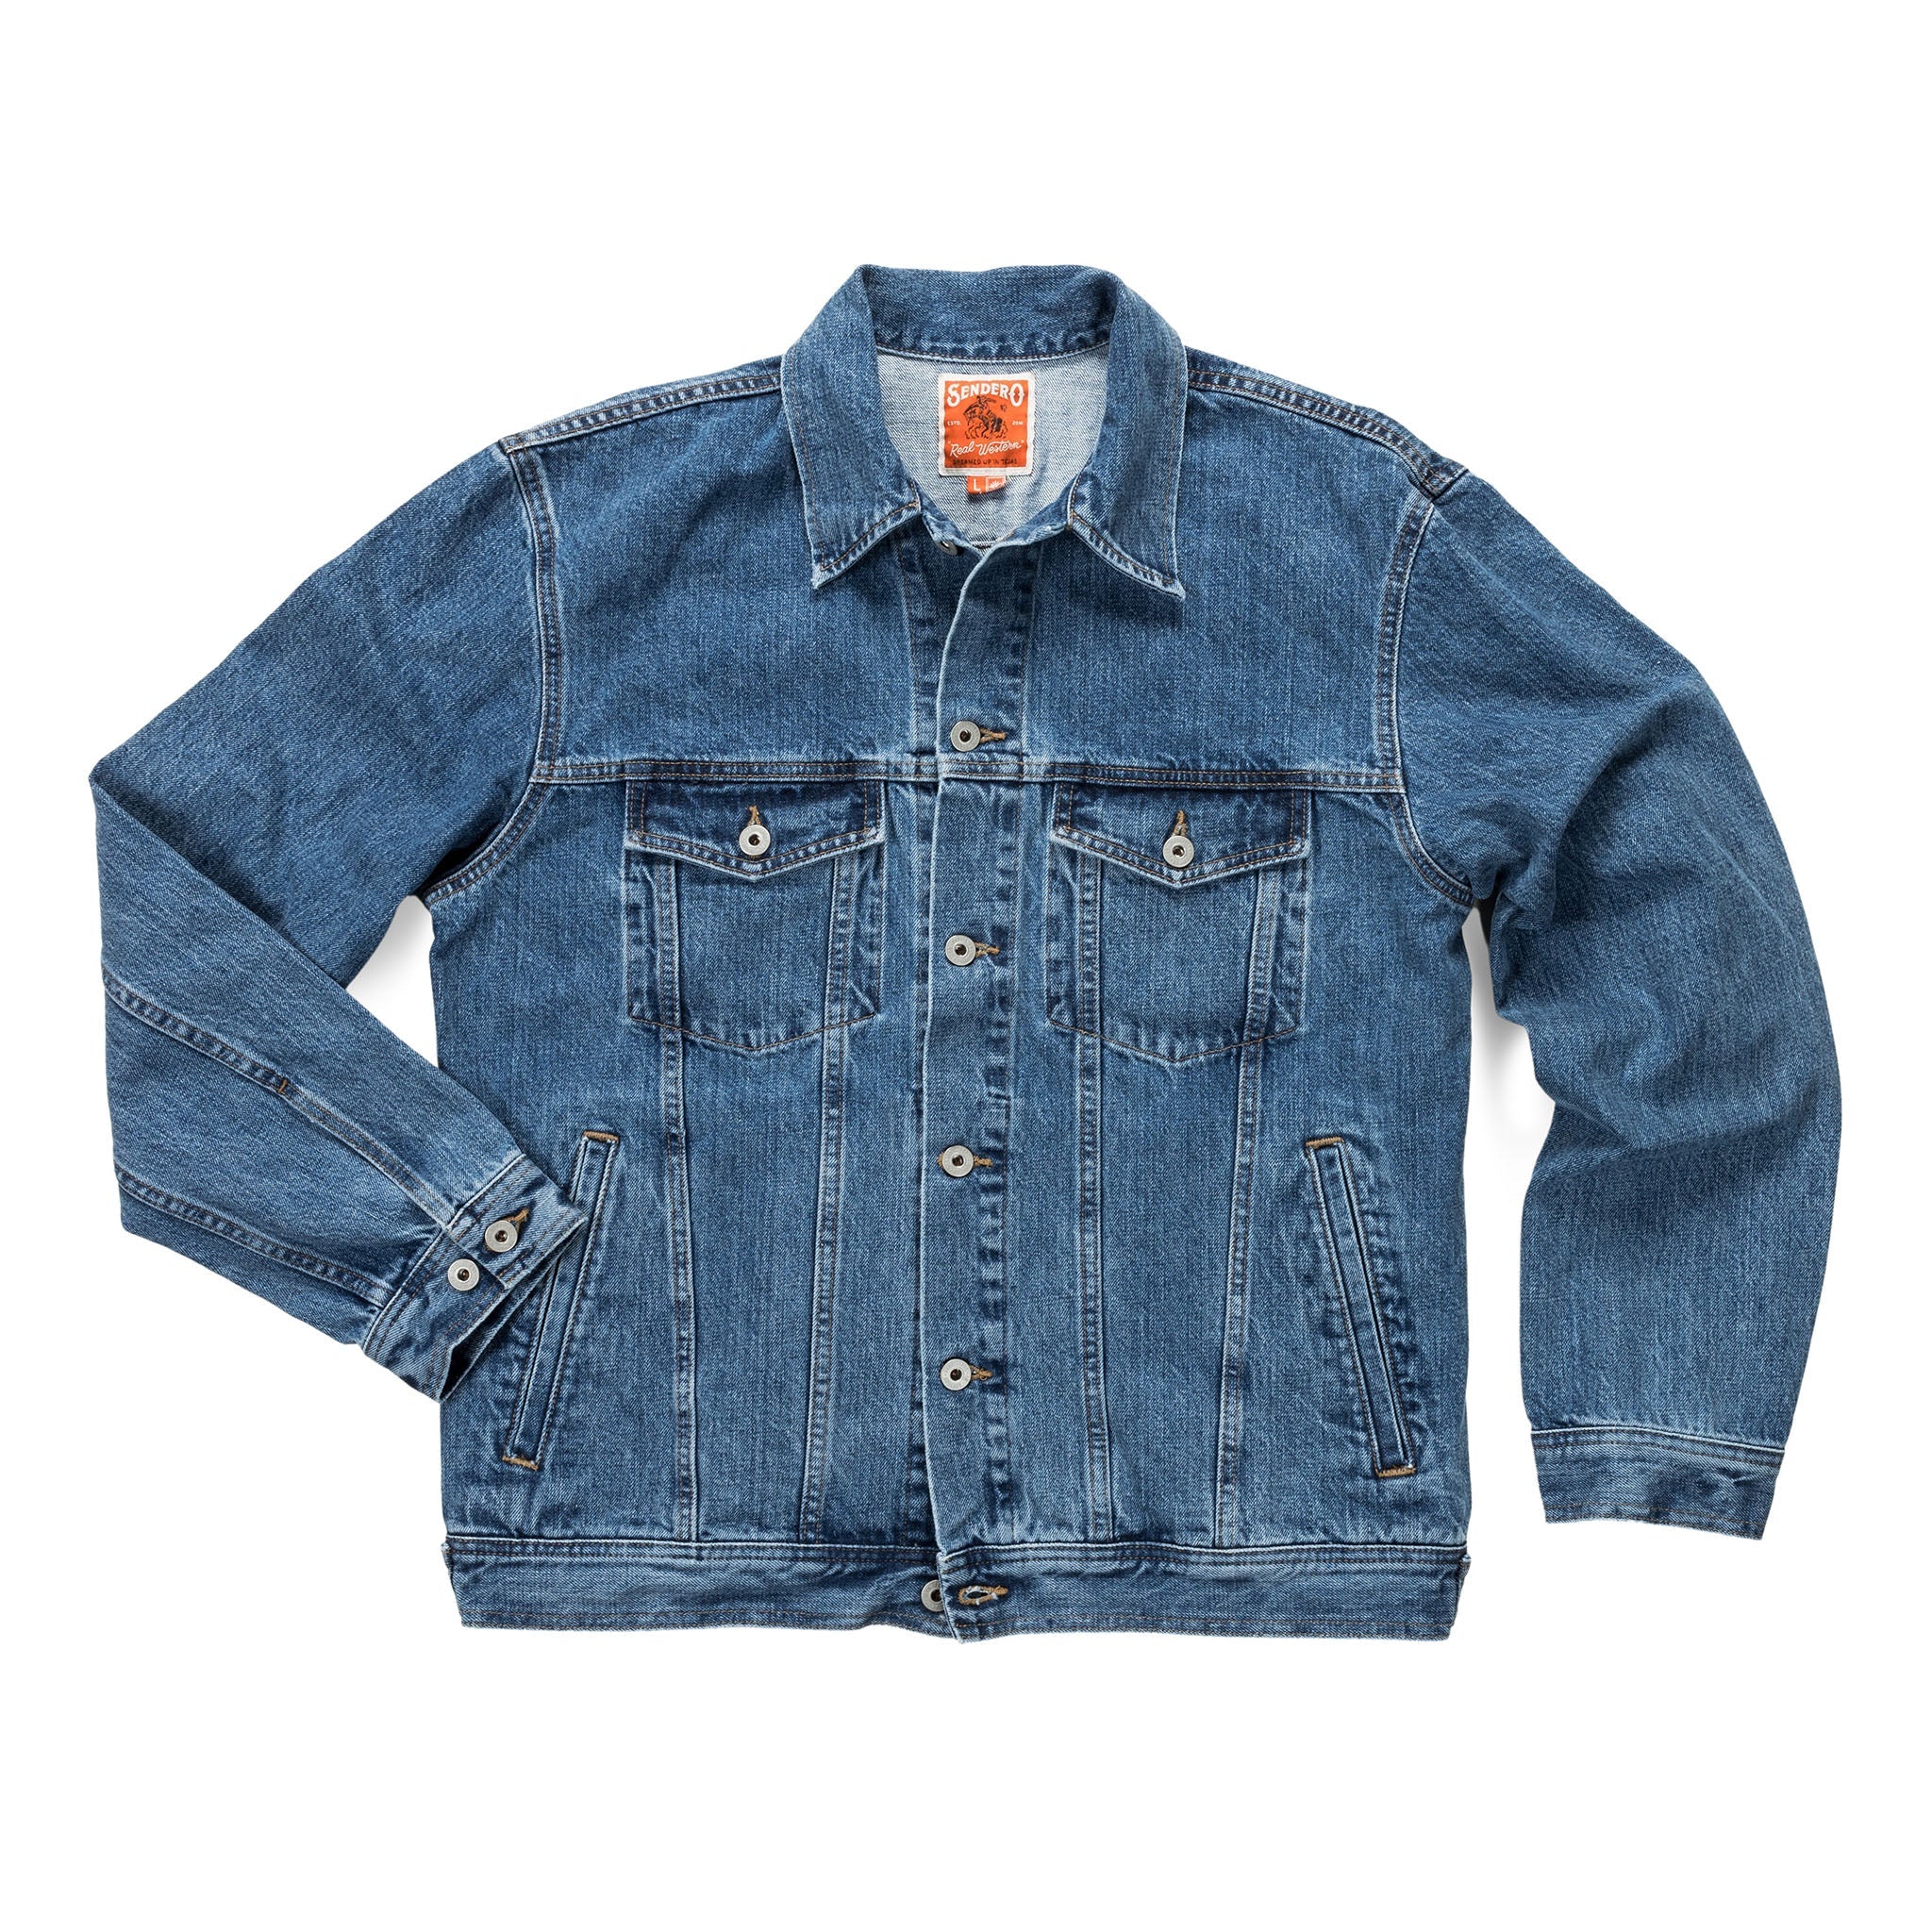 Buy Ketch Blue Solid Denim Jacket for Men Online at Rs.969 - Ketch